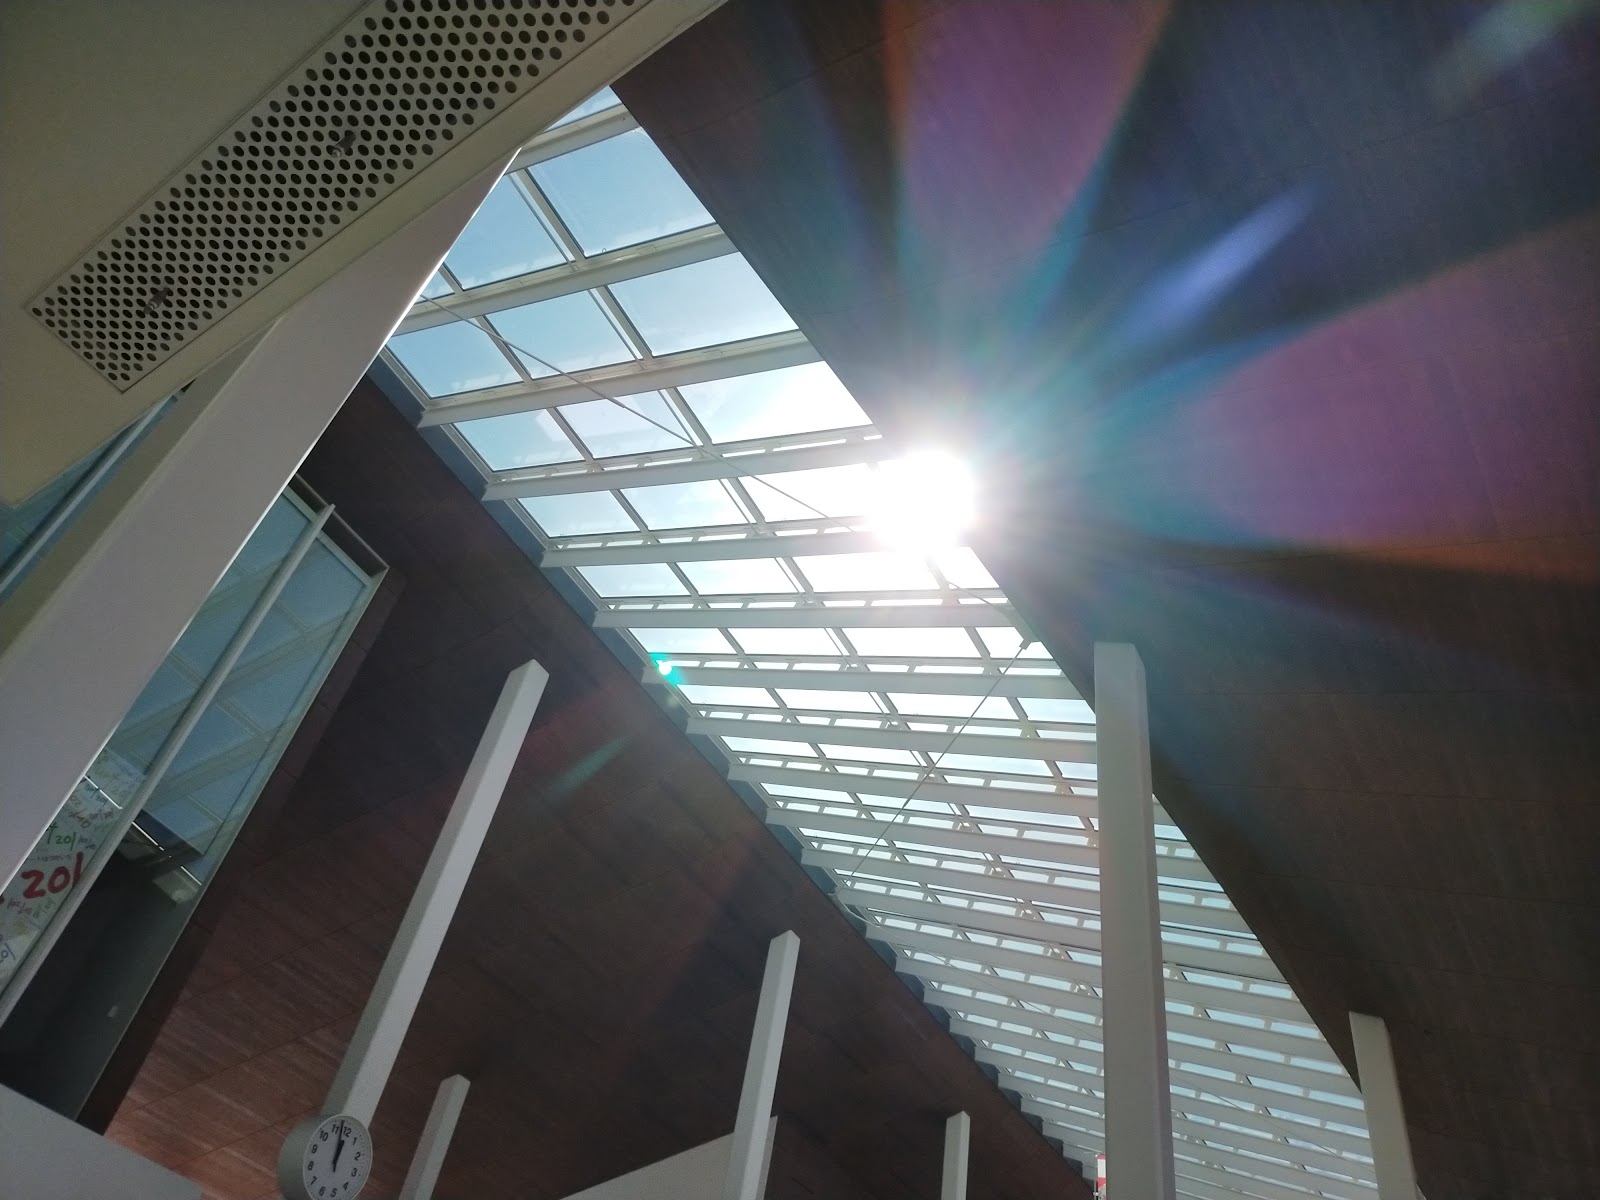 フェリー乗り場の天井、太陽光がとても綺麗。